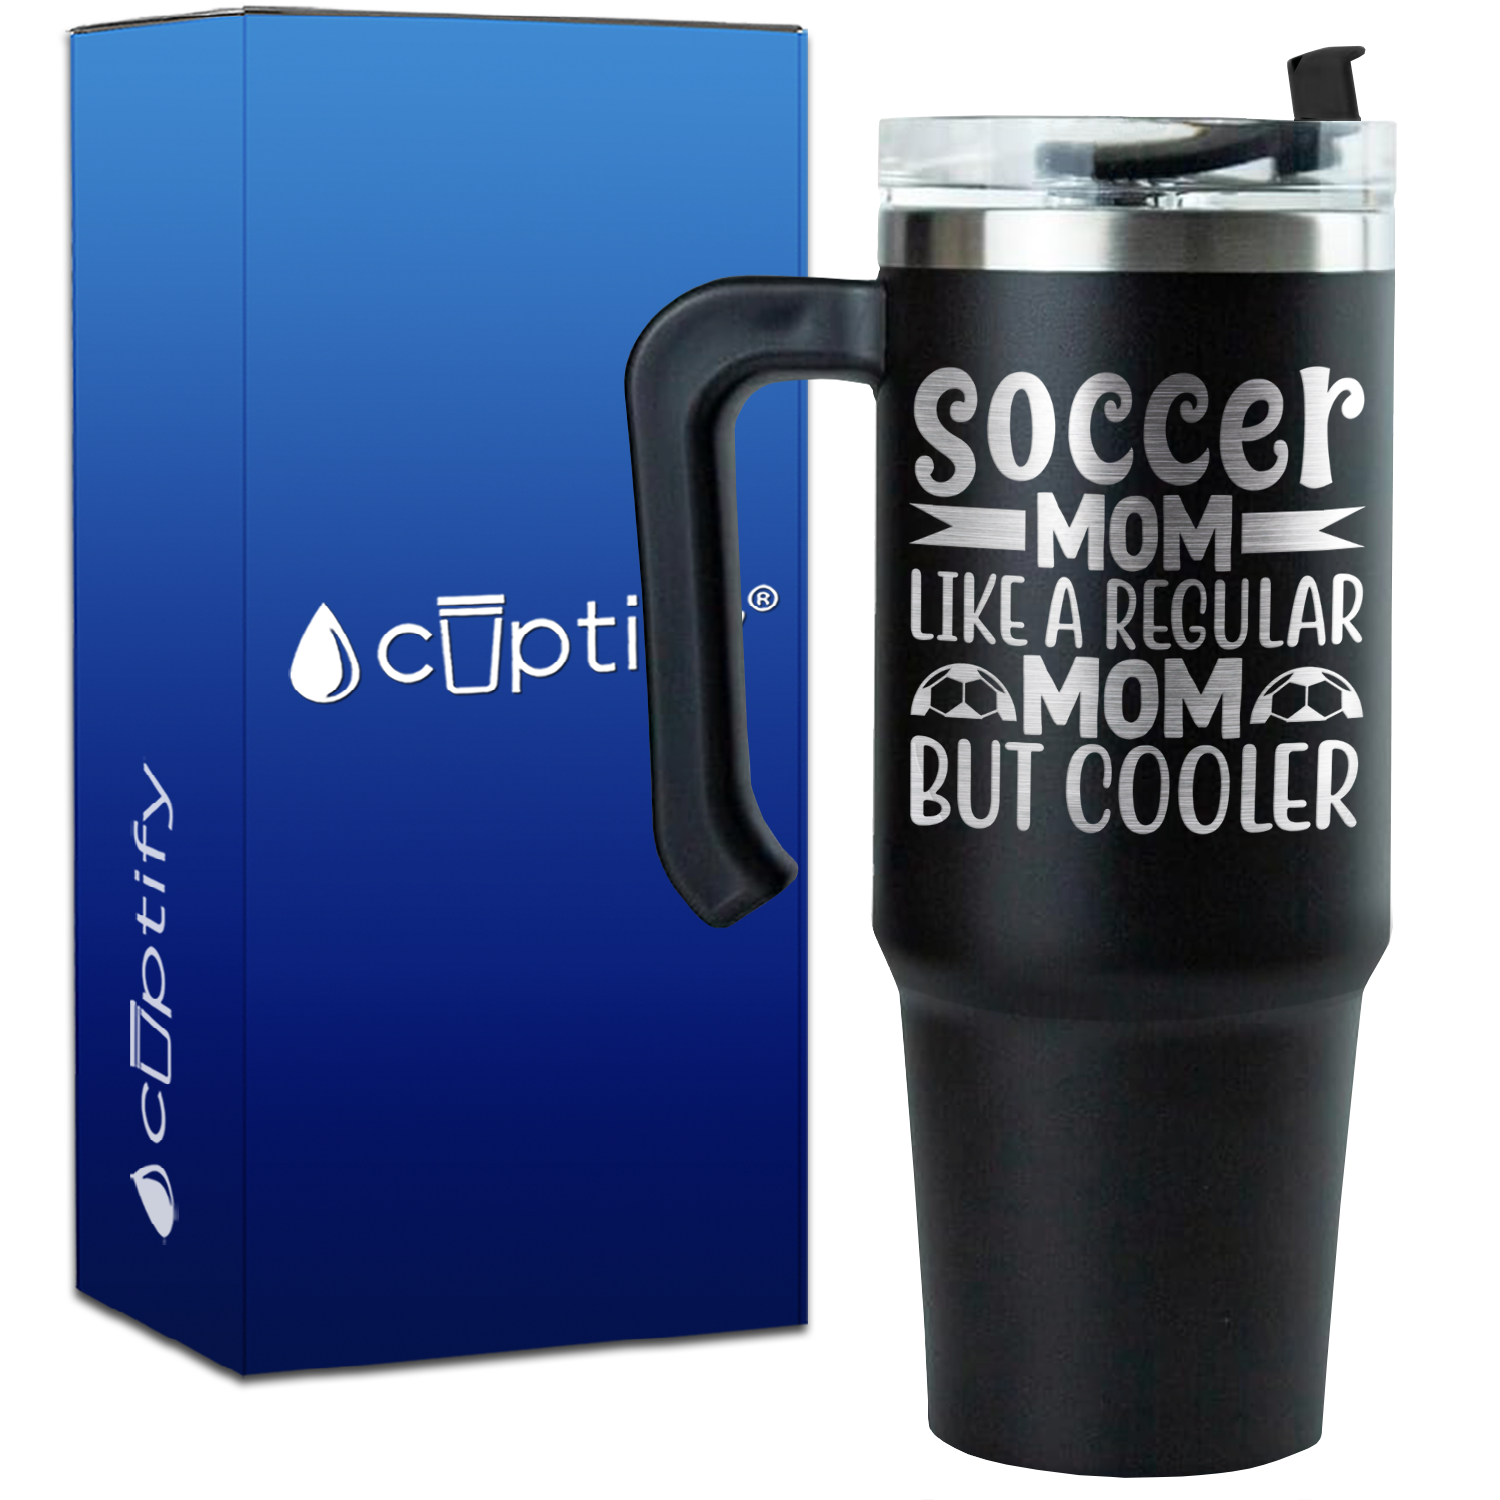 Soccer Mom Like a Regular but Cooler on 30oz Soccer Travel Mug